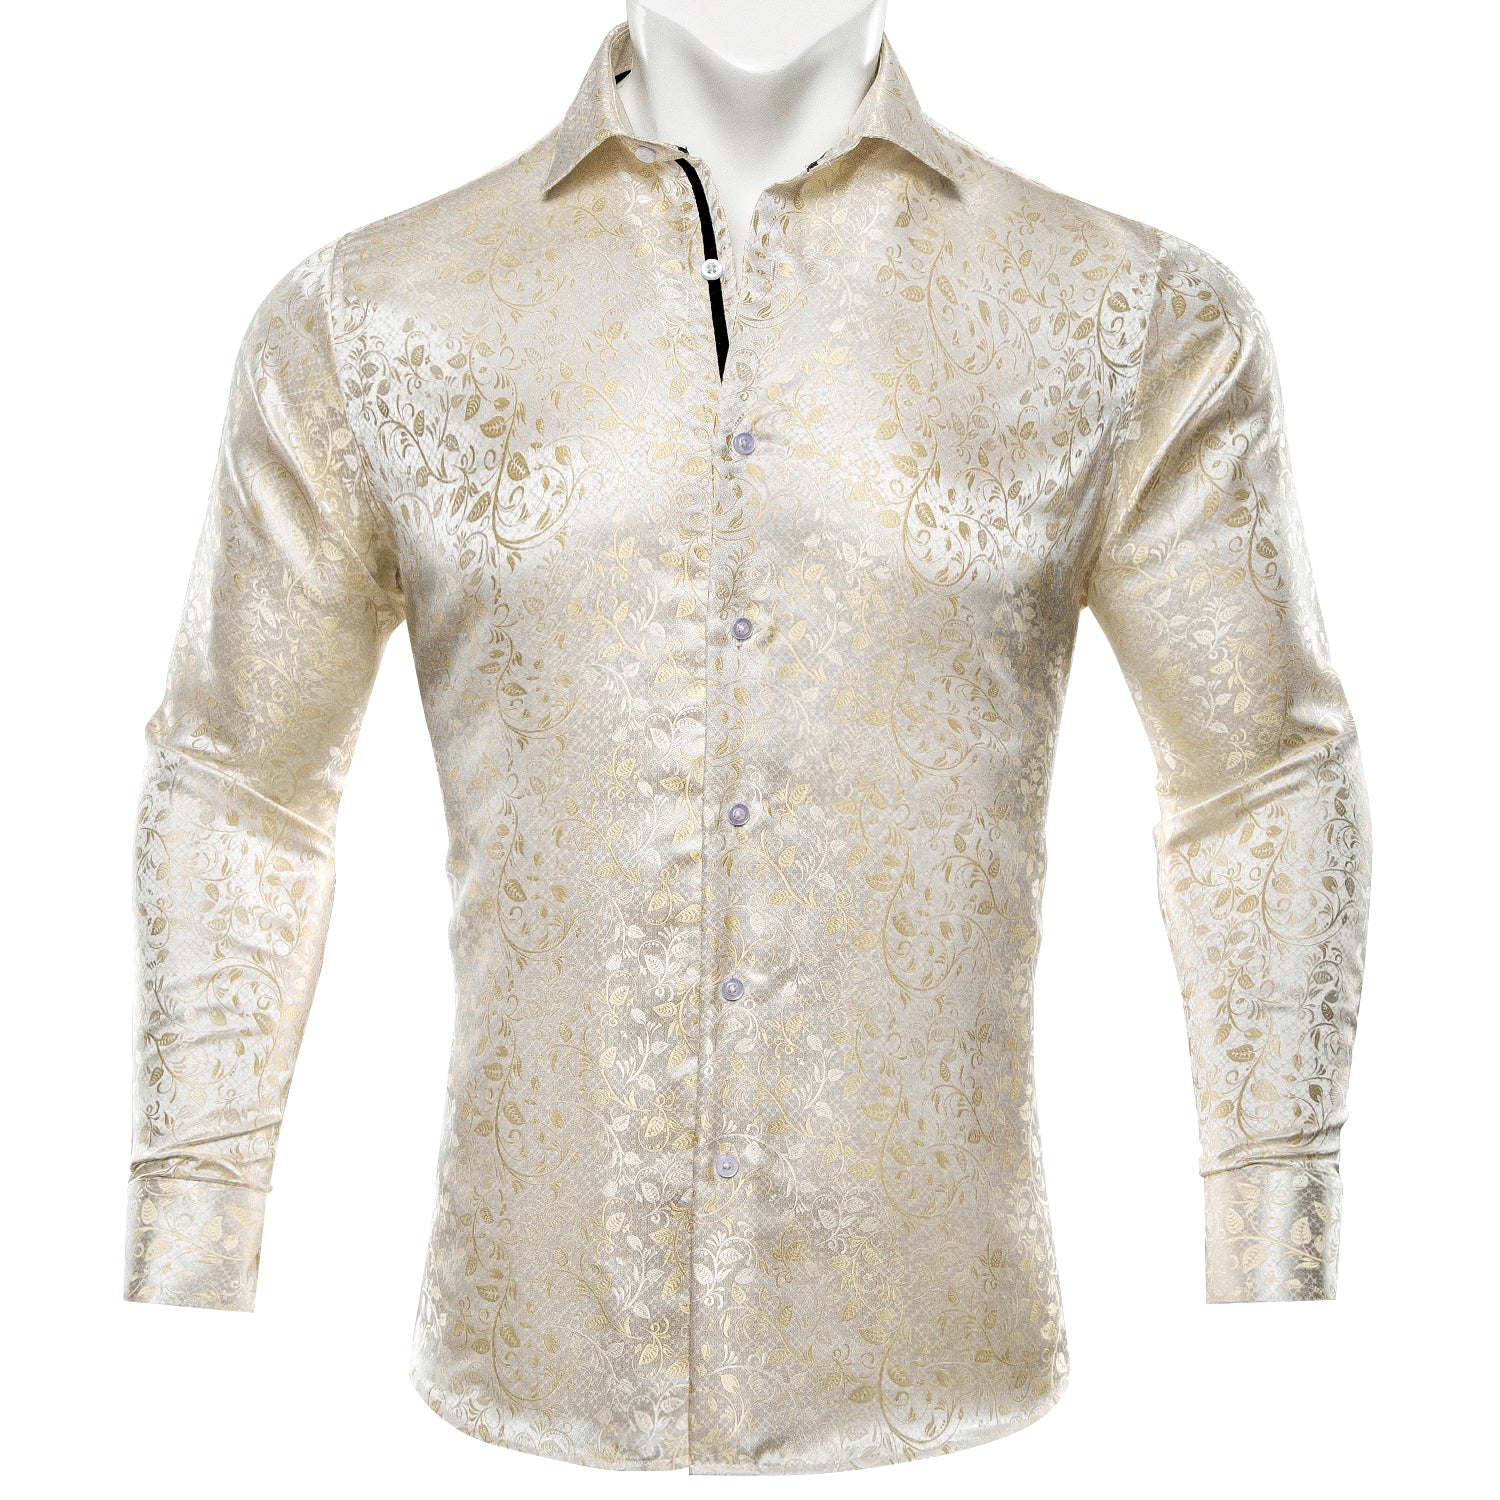 Barry.wang Button Down Shirt Men's Champagne Floral Silk Dress Shirt